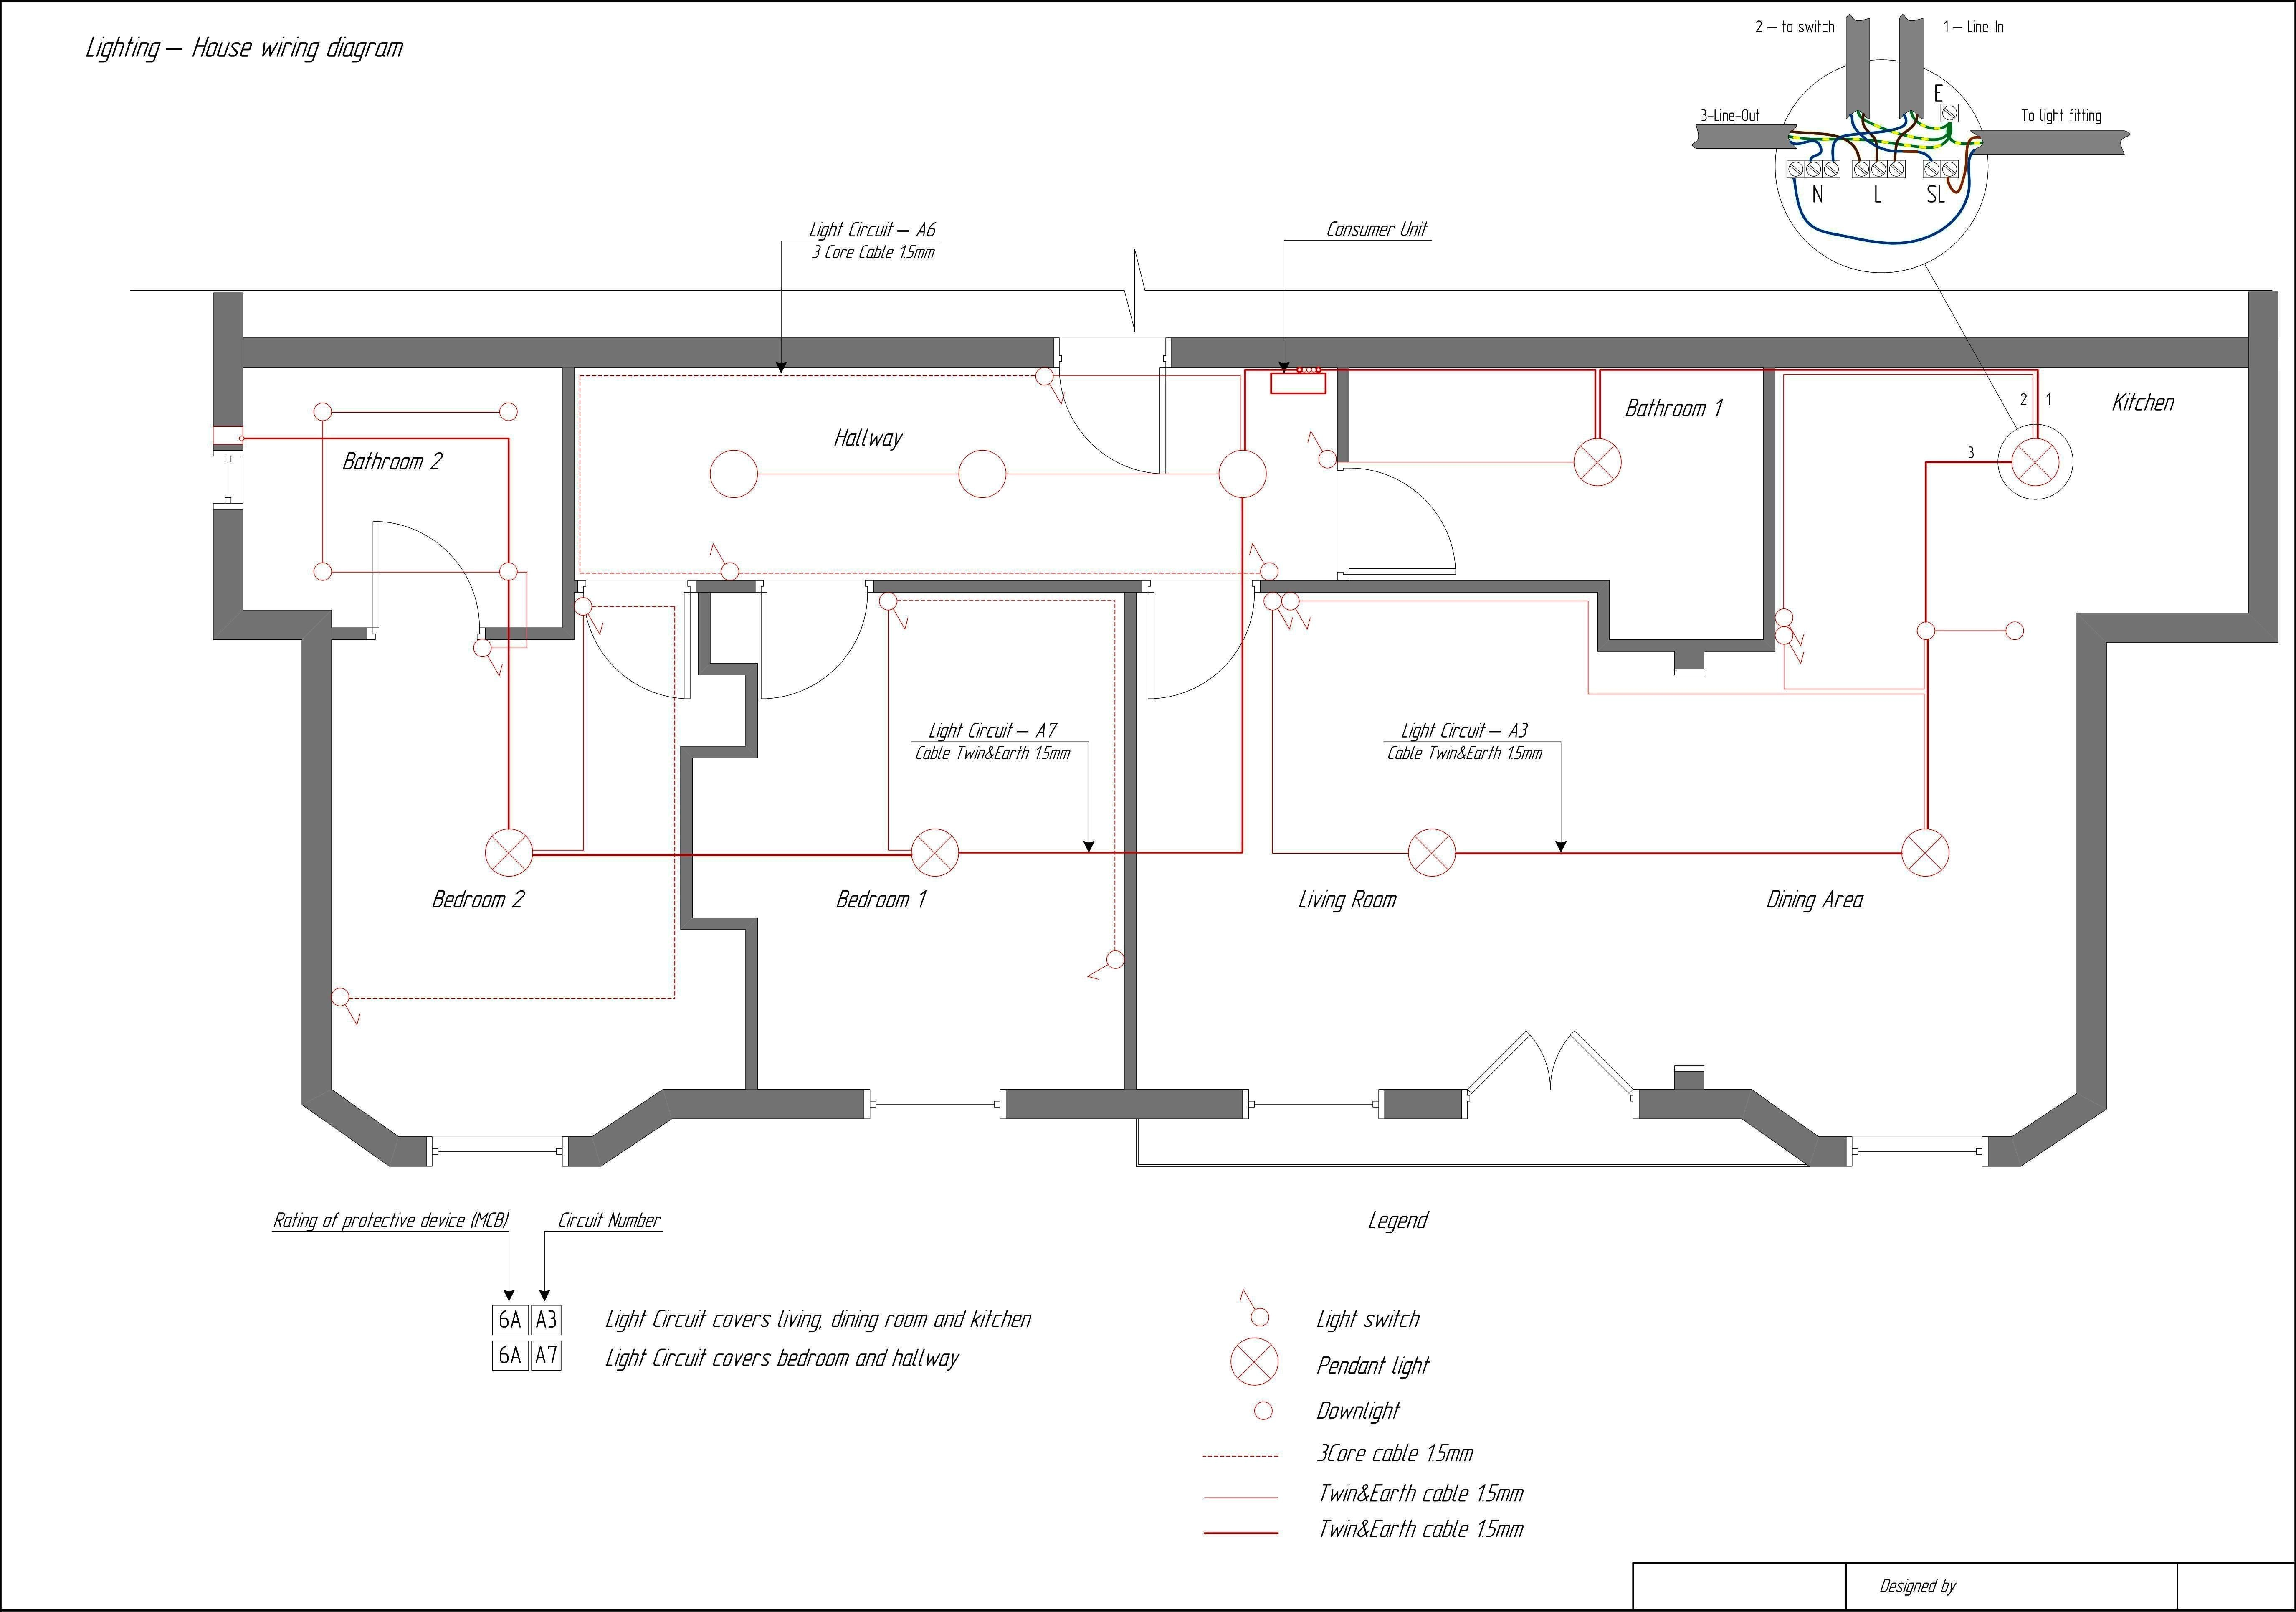 electrical floor plan lovely electrical wiring diagram house book house wiring diagram of electrical floor plan jpg